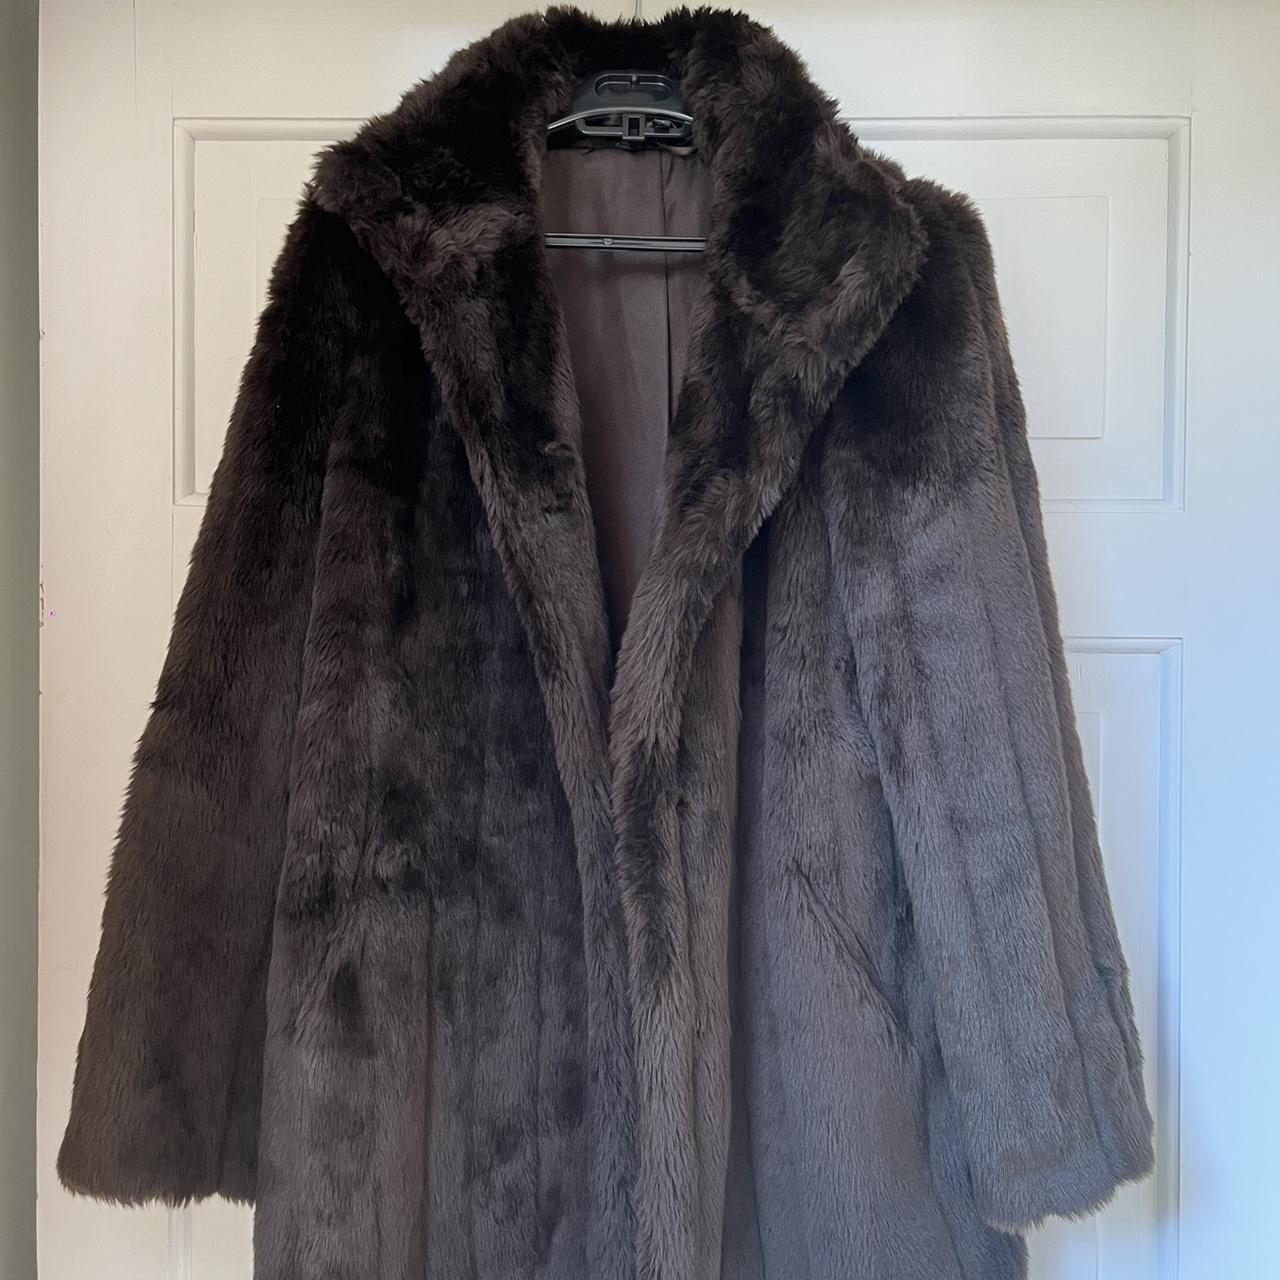 Beautiful vintage m&s fur coat size 12.... - Depop